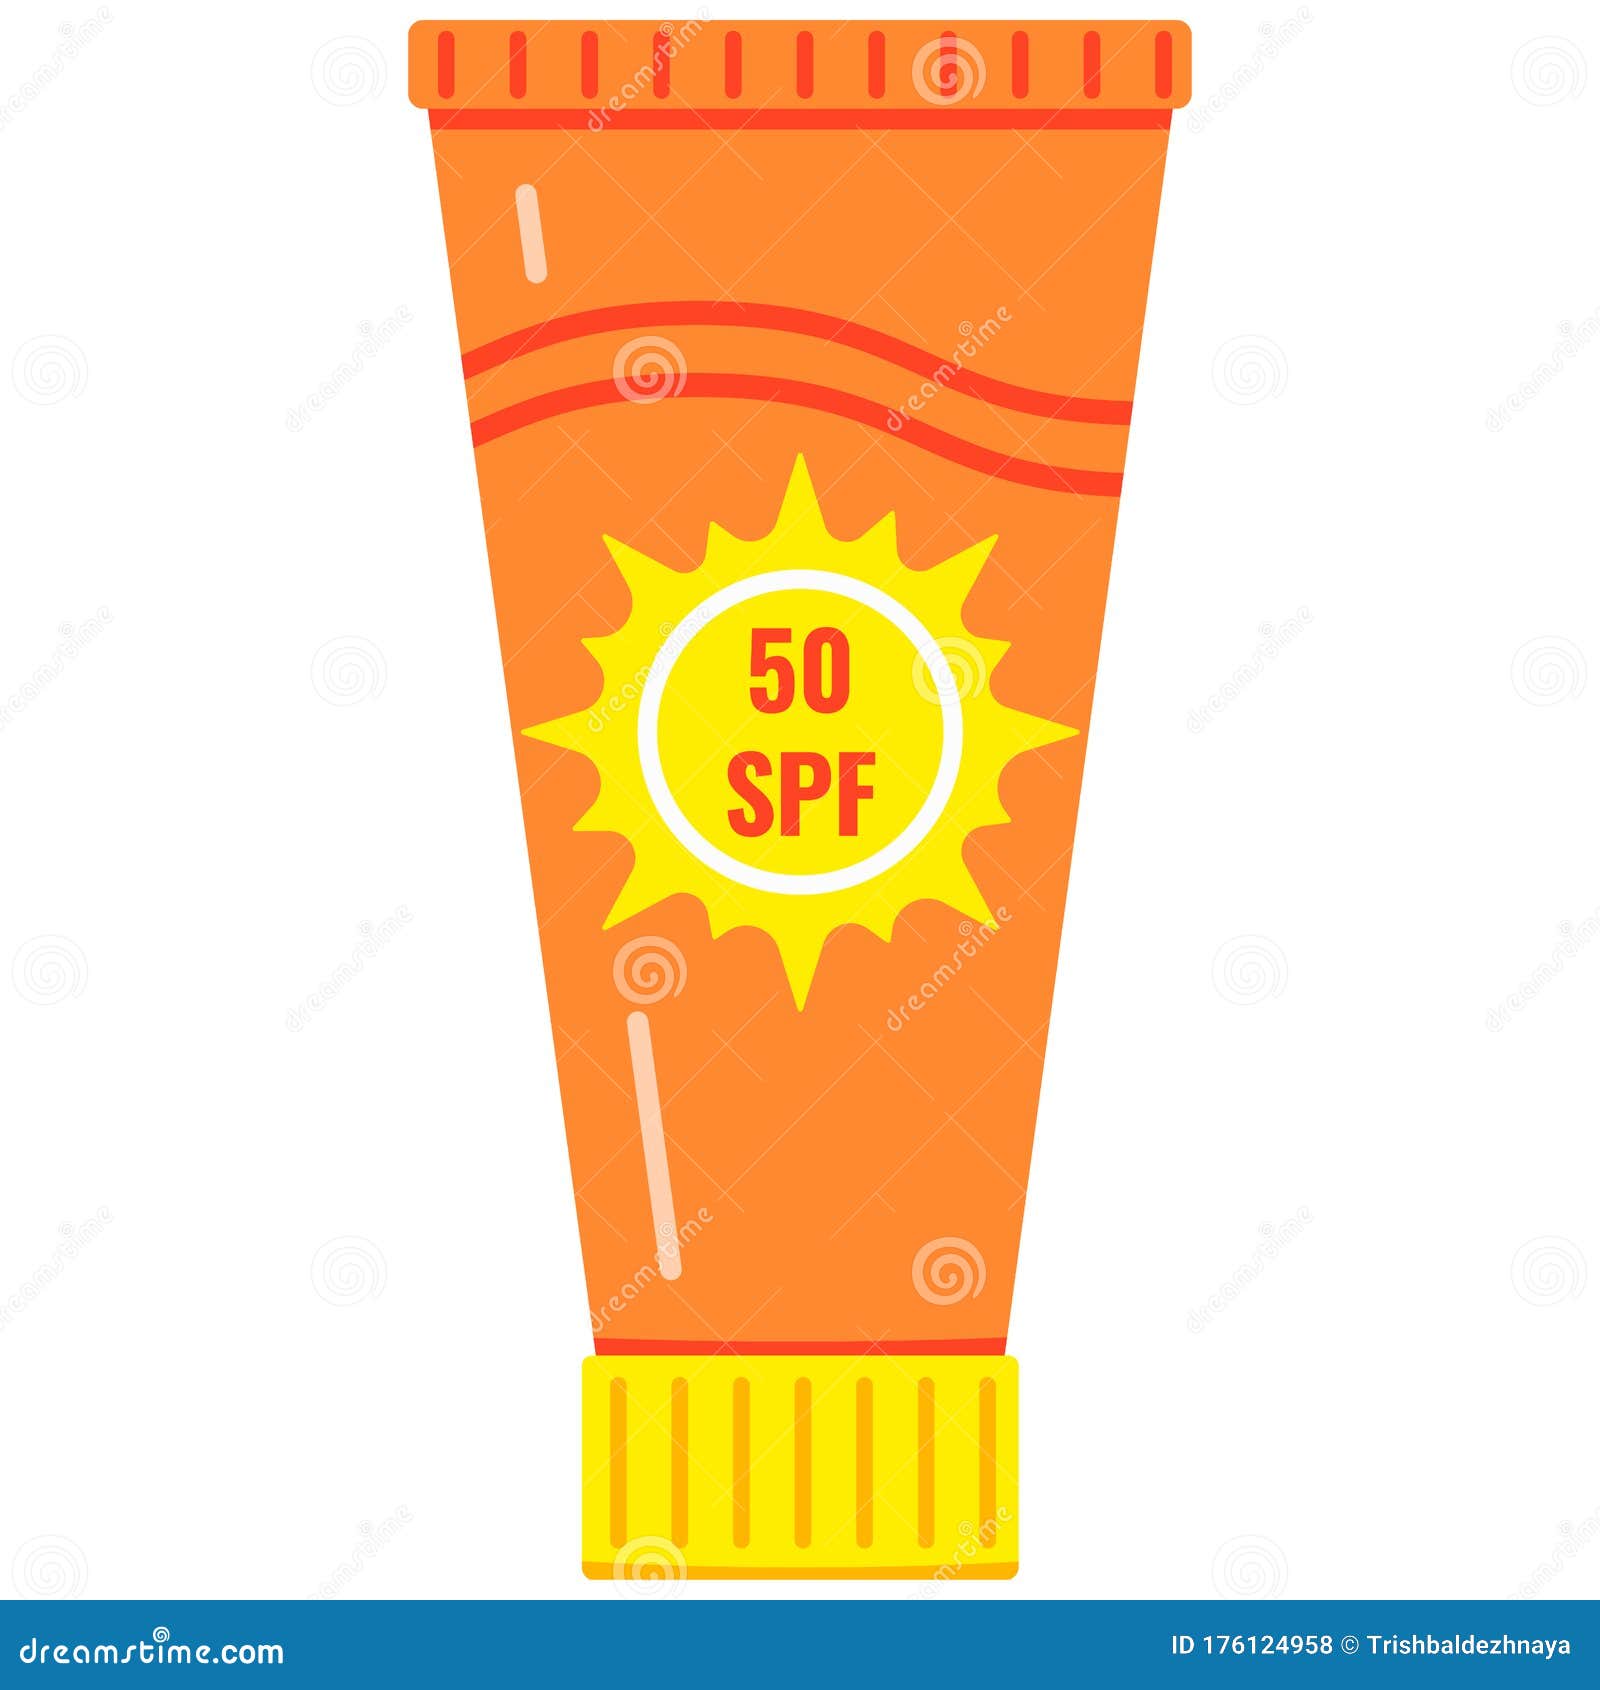 Sunscreen Bottle With Dispenser Pump Stock Photography | CartoonDealer